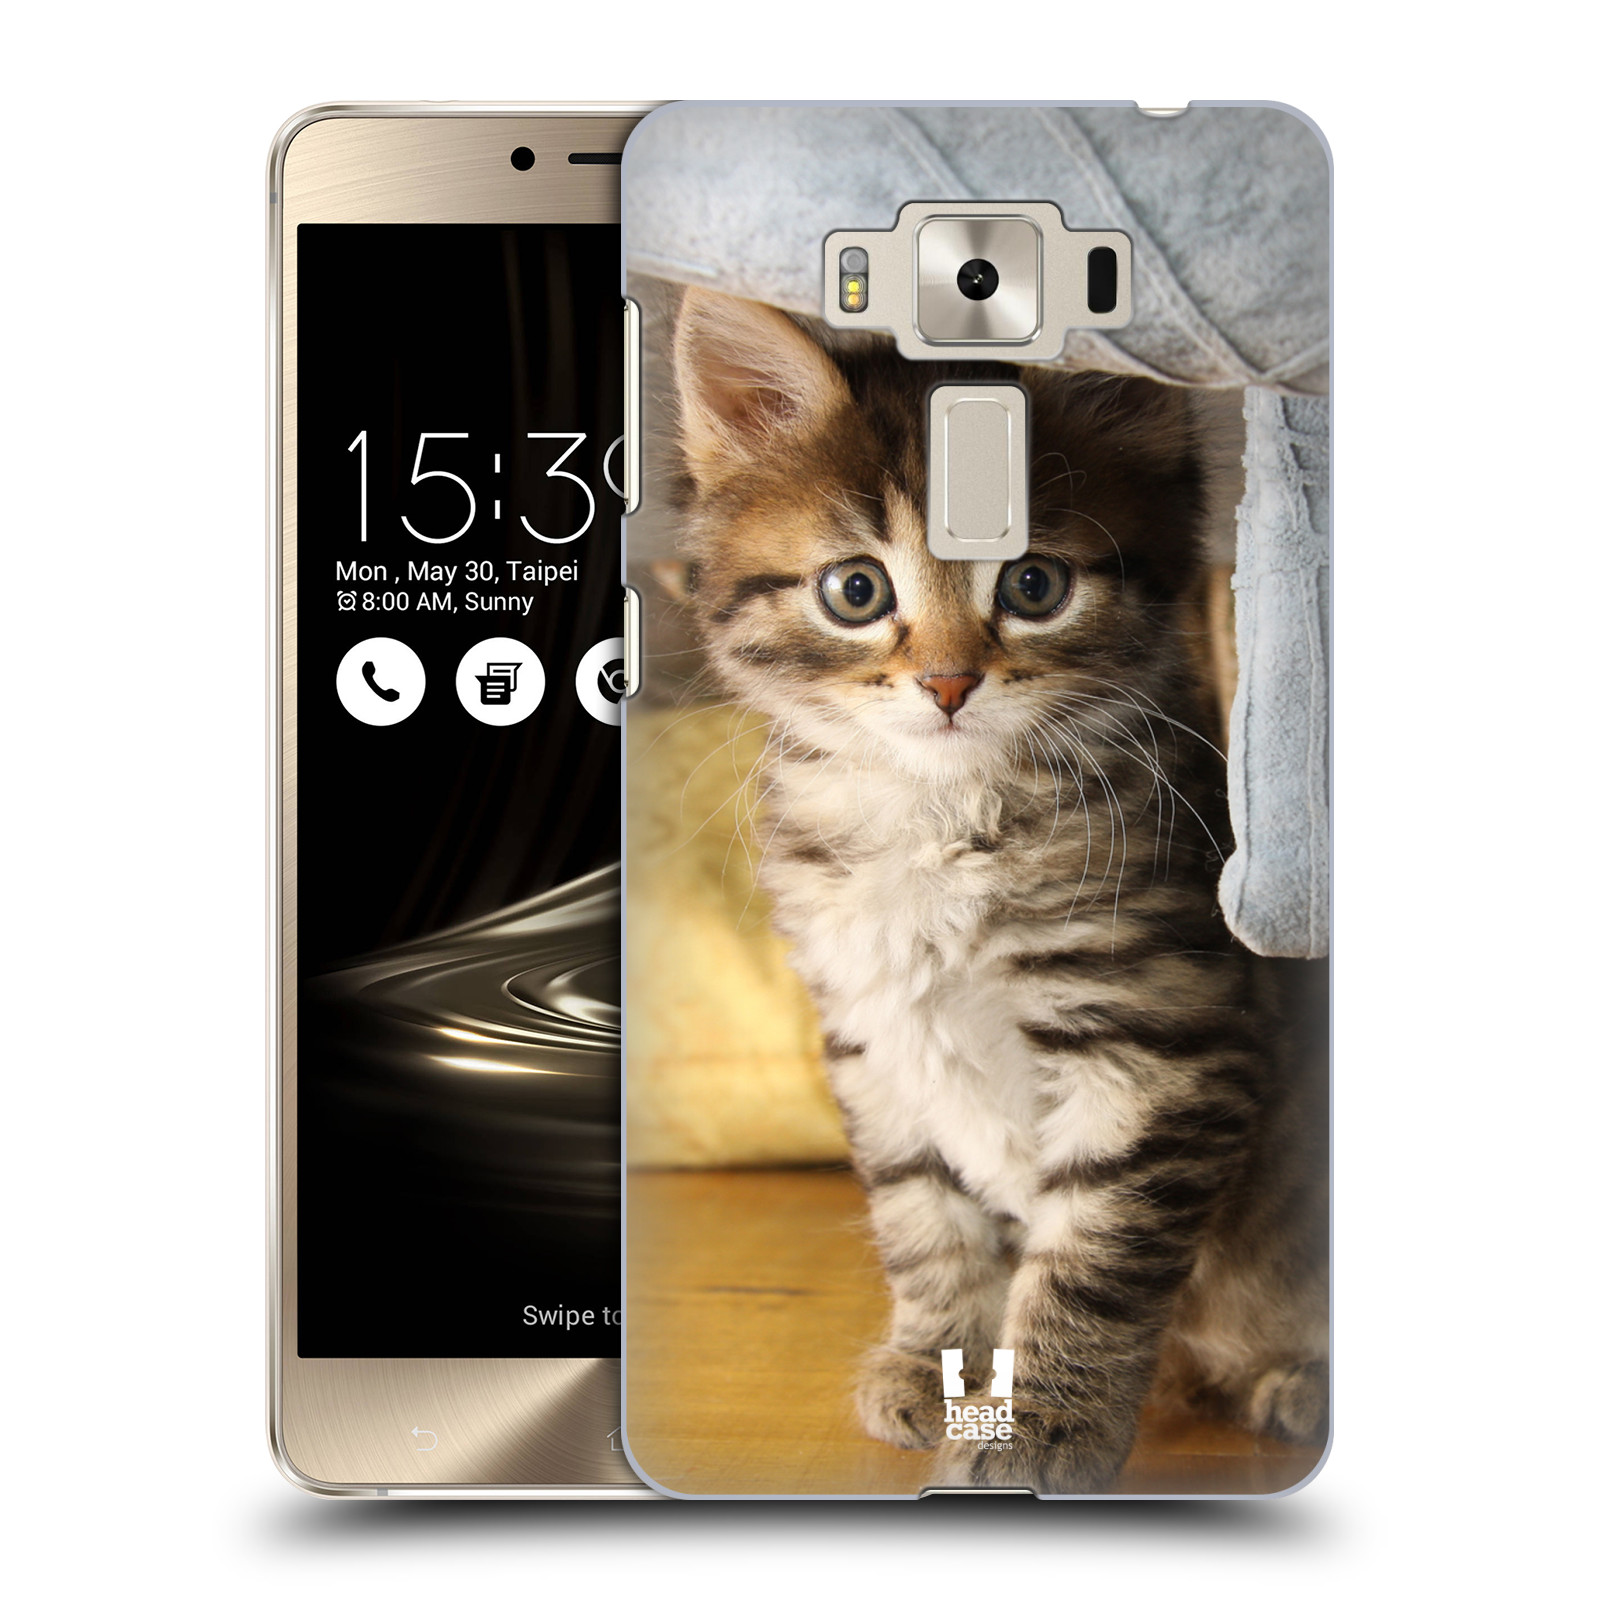 HEAD CASE plastový obal na mobil Asus Zenfone 3 DELUXE ZS550KL vzor Kočičky koťata foto mourek